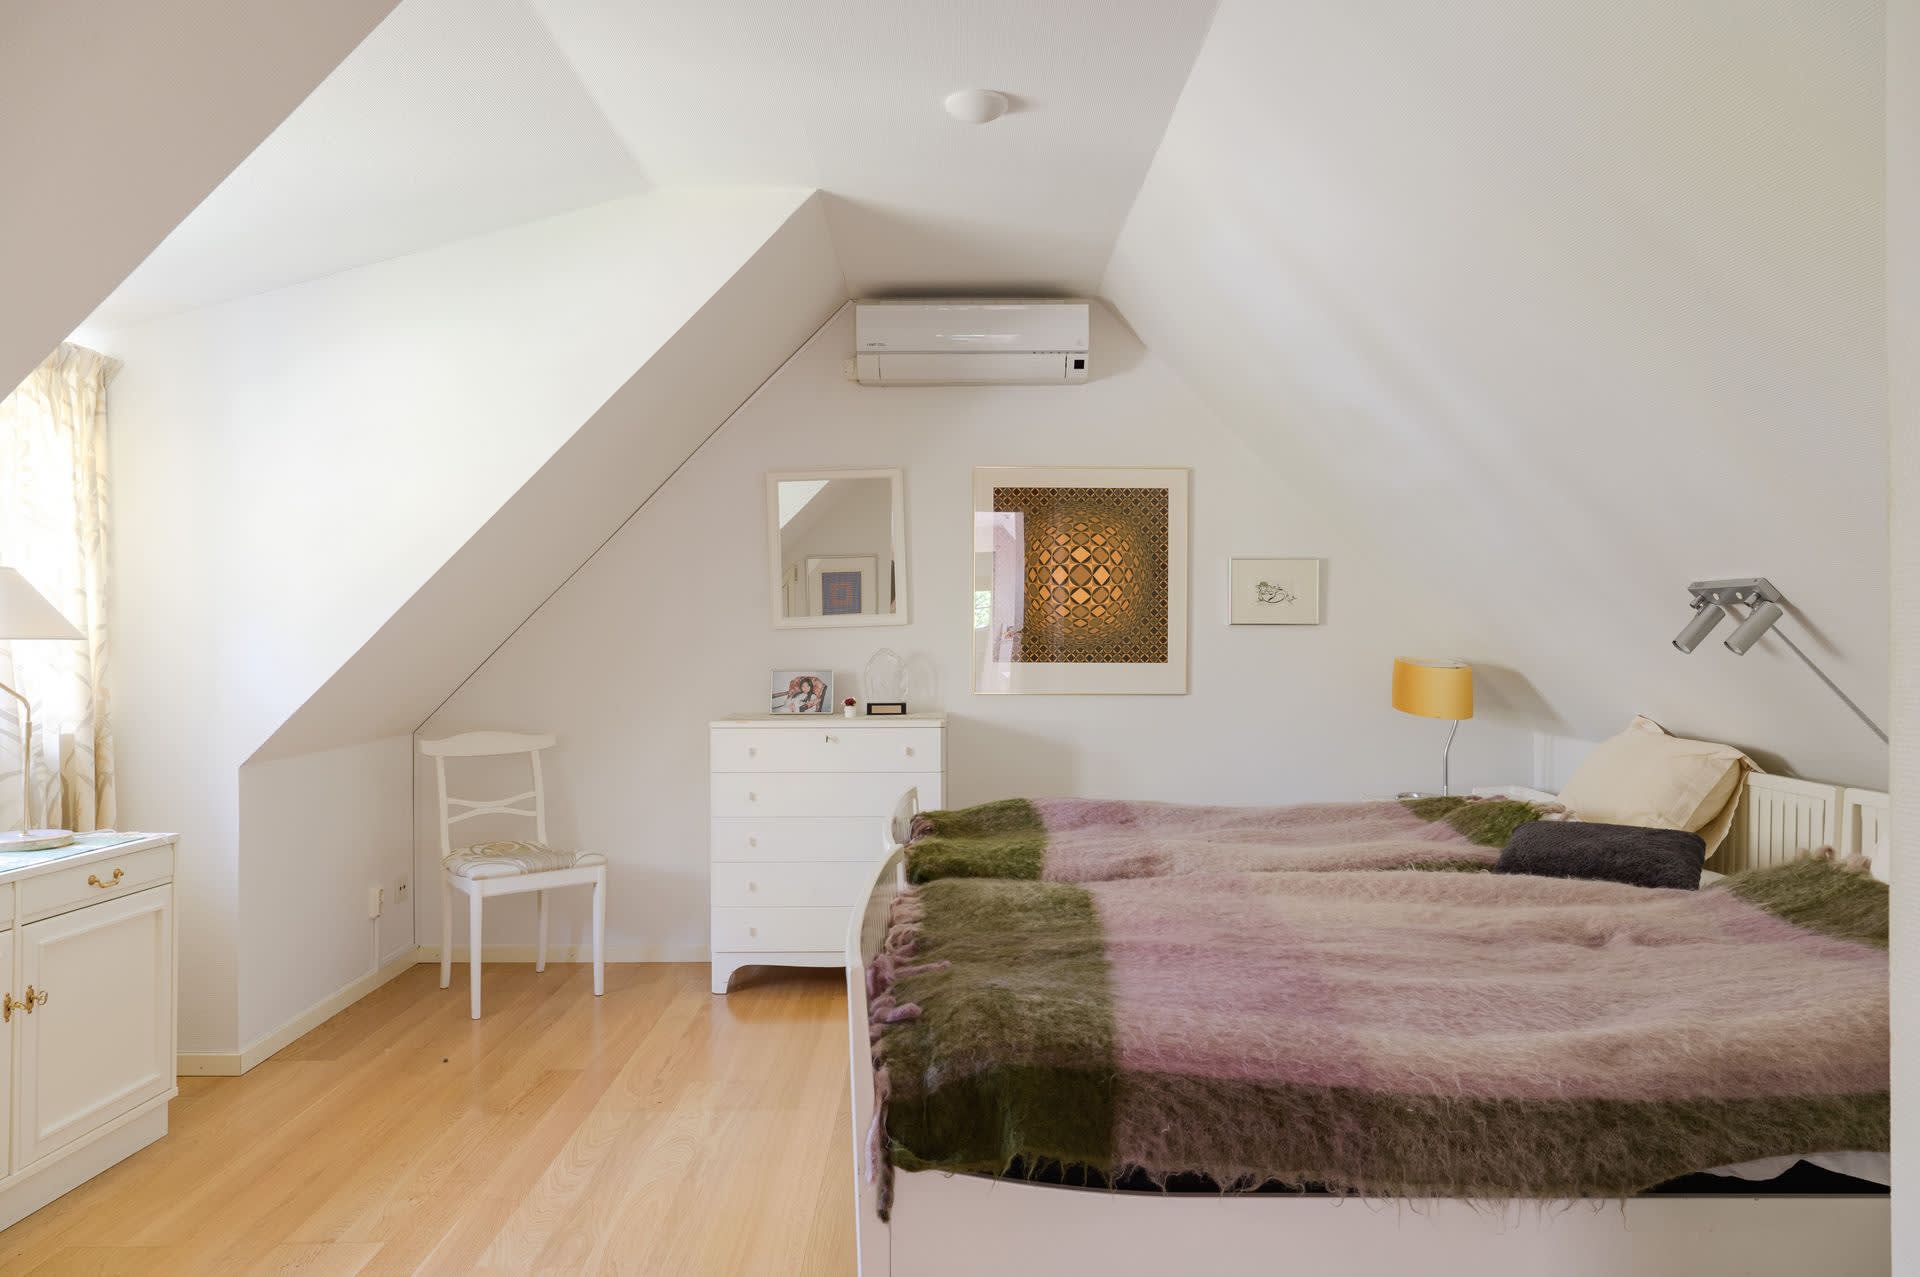 Master bedroom med luft/luft-aggregat för kyla och värme